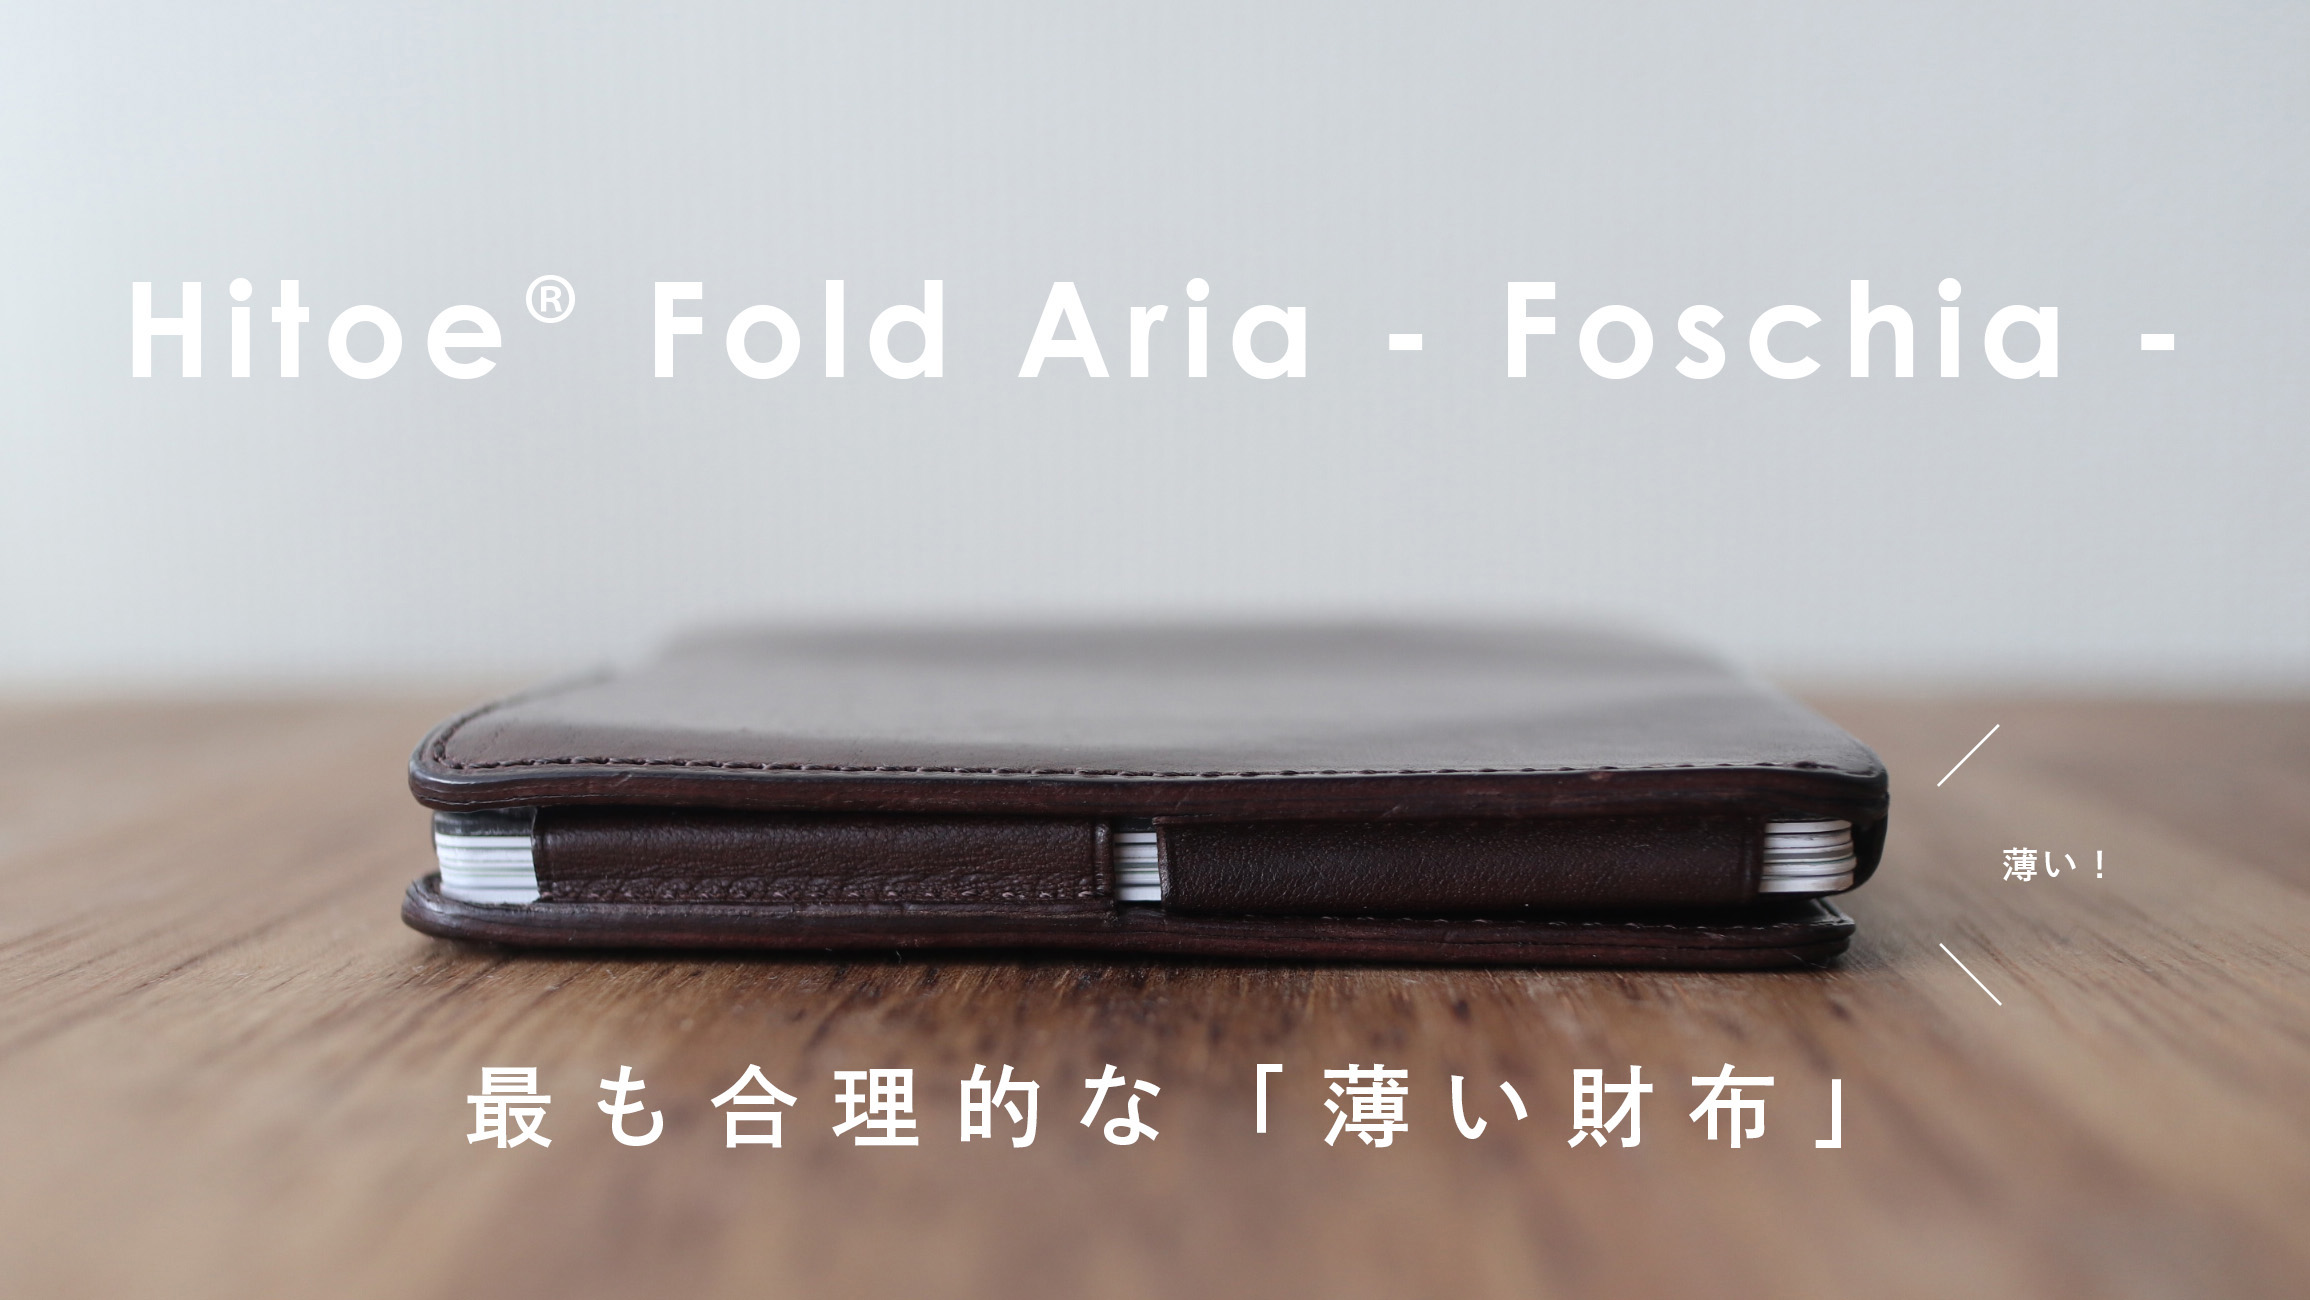 薄い財布「Hitoe Fold Aria -Foschia-」 を1年間使用したので勝手に